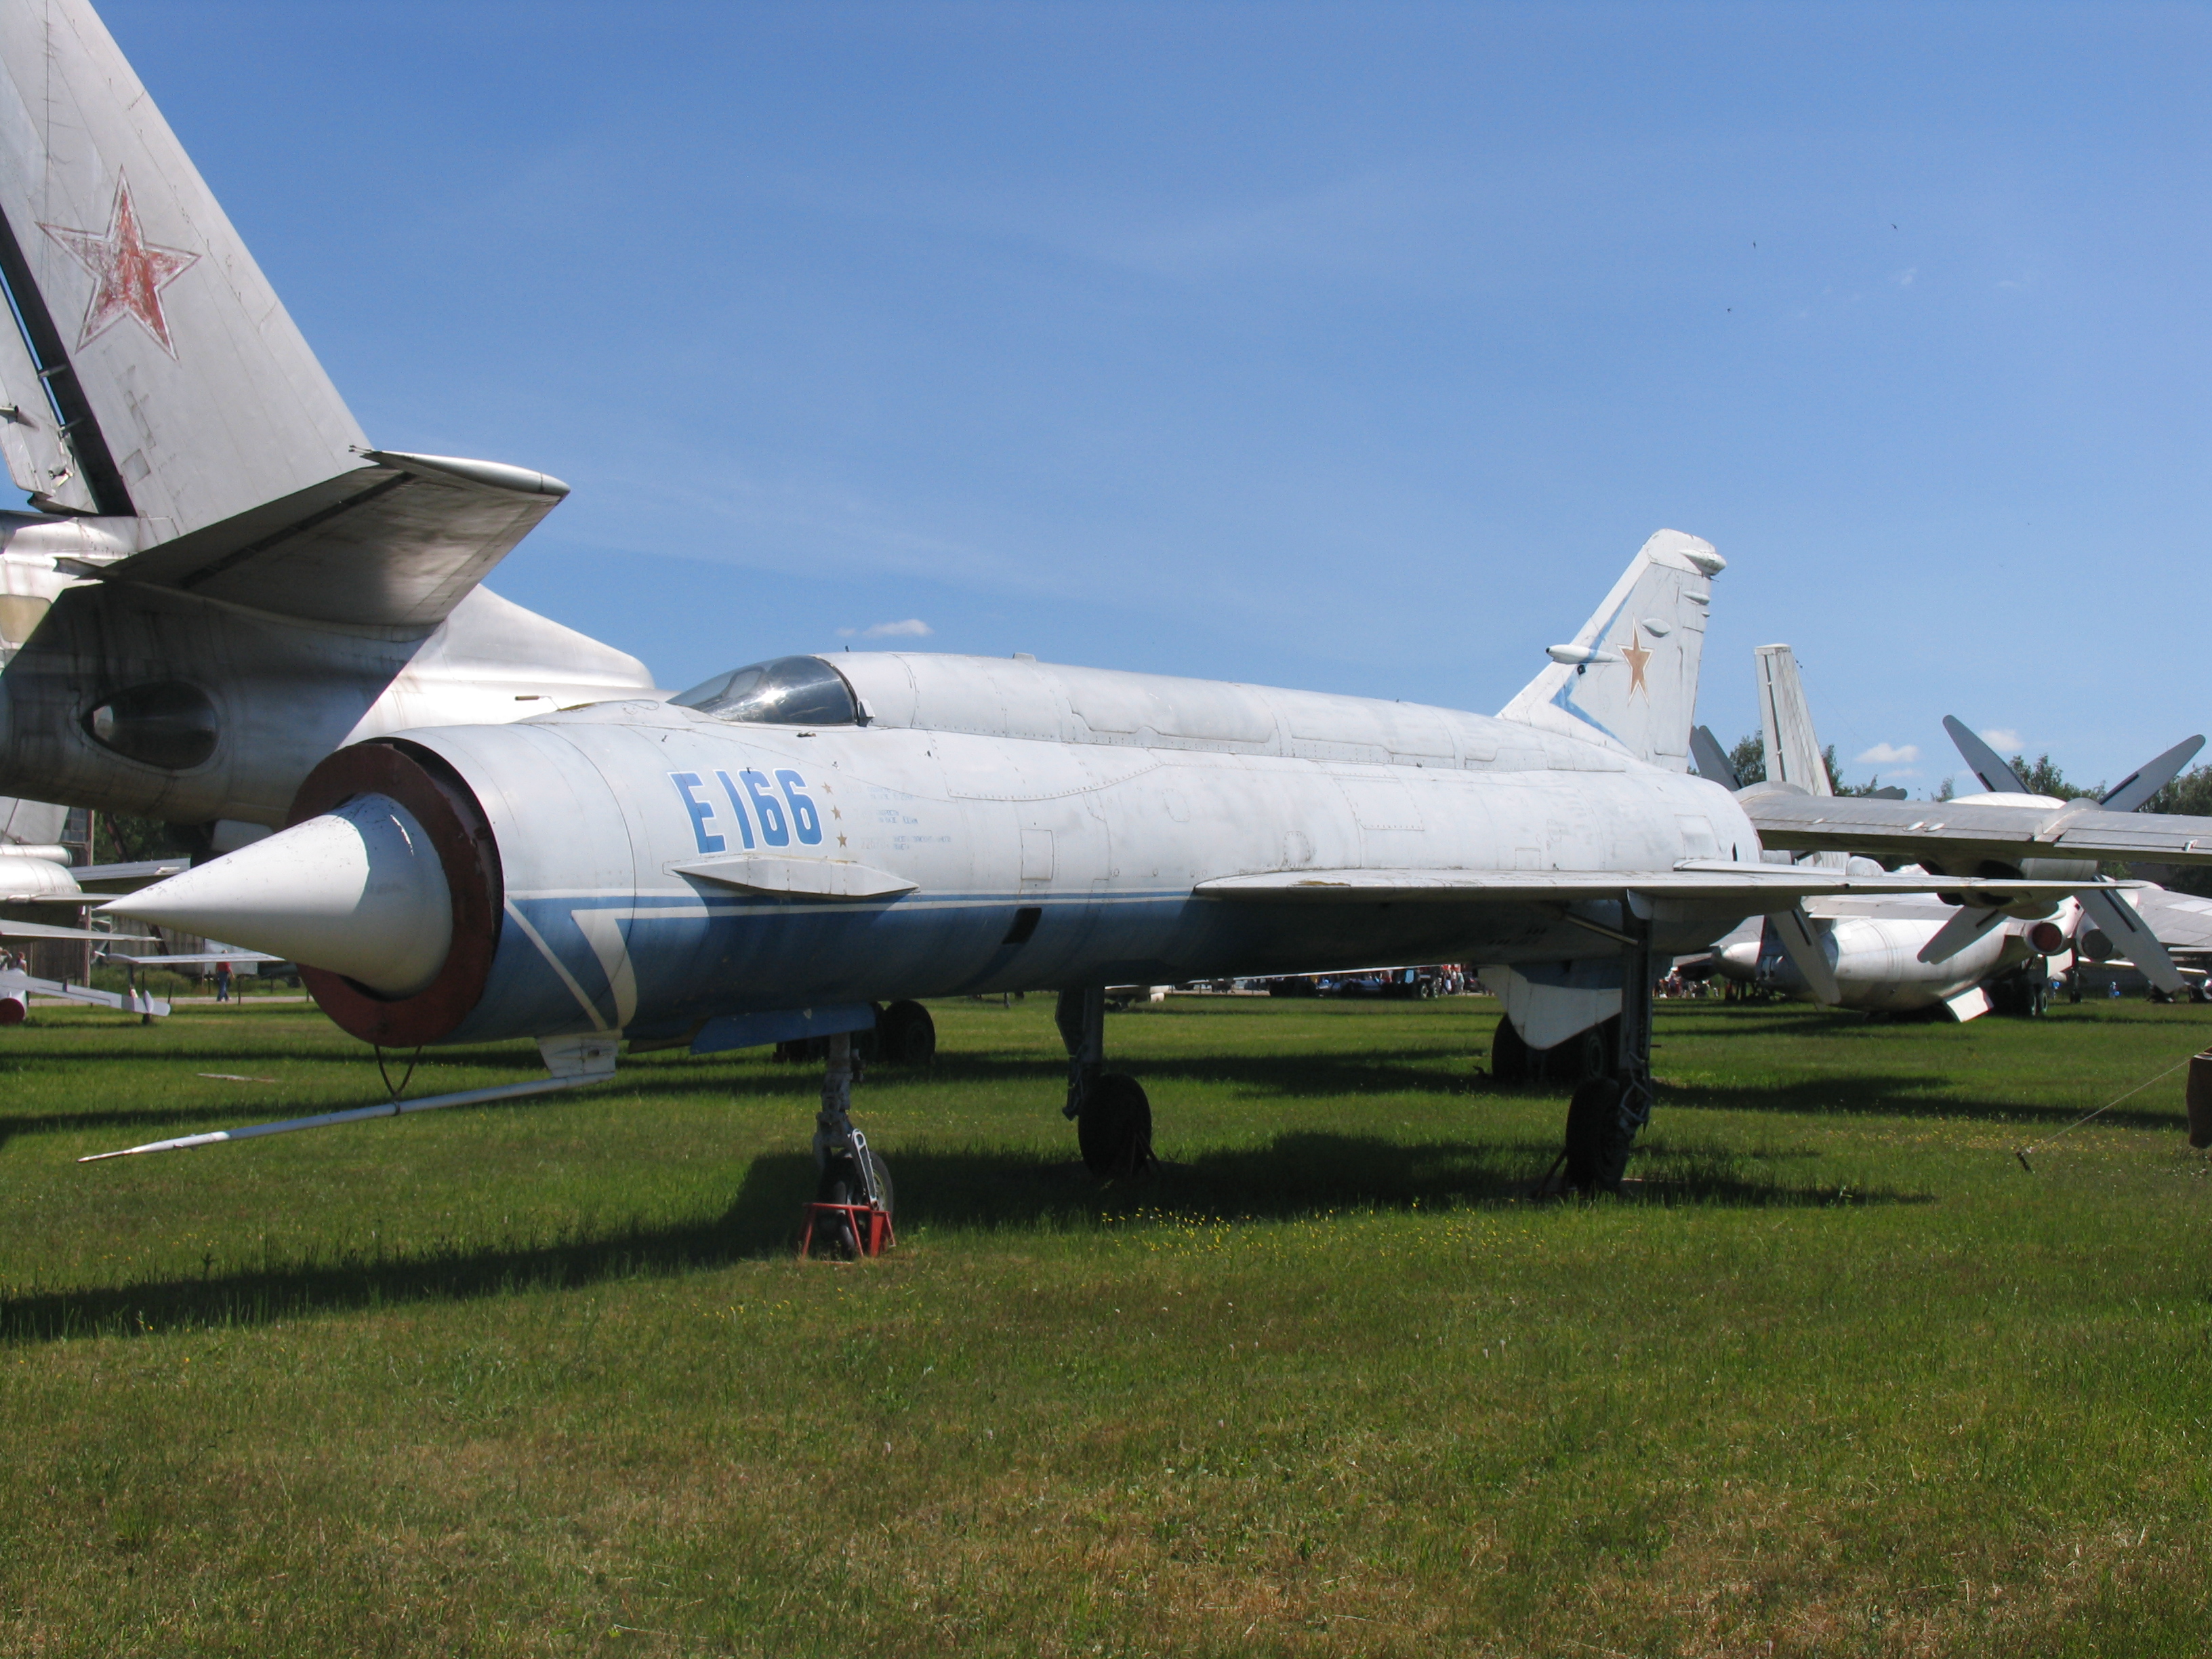 Ye-150 (航空機) - Wikipedia